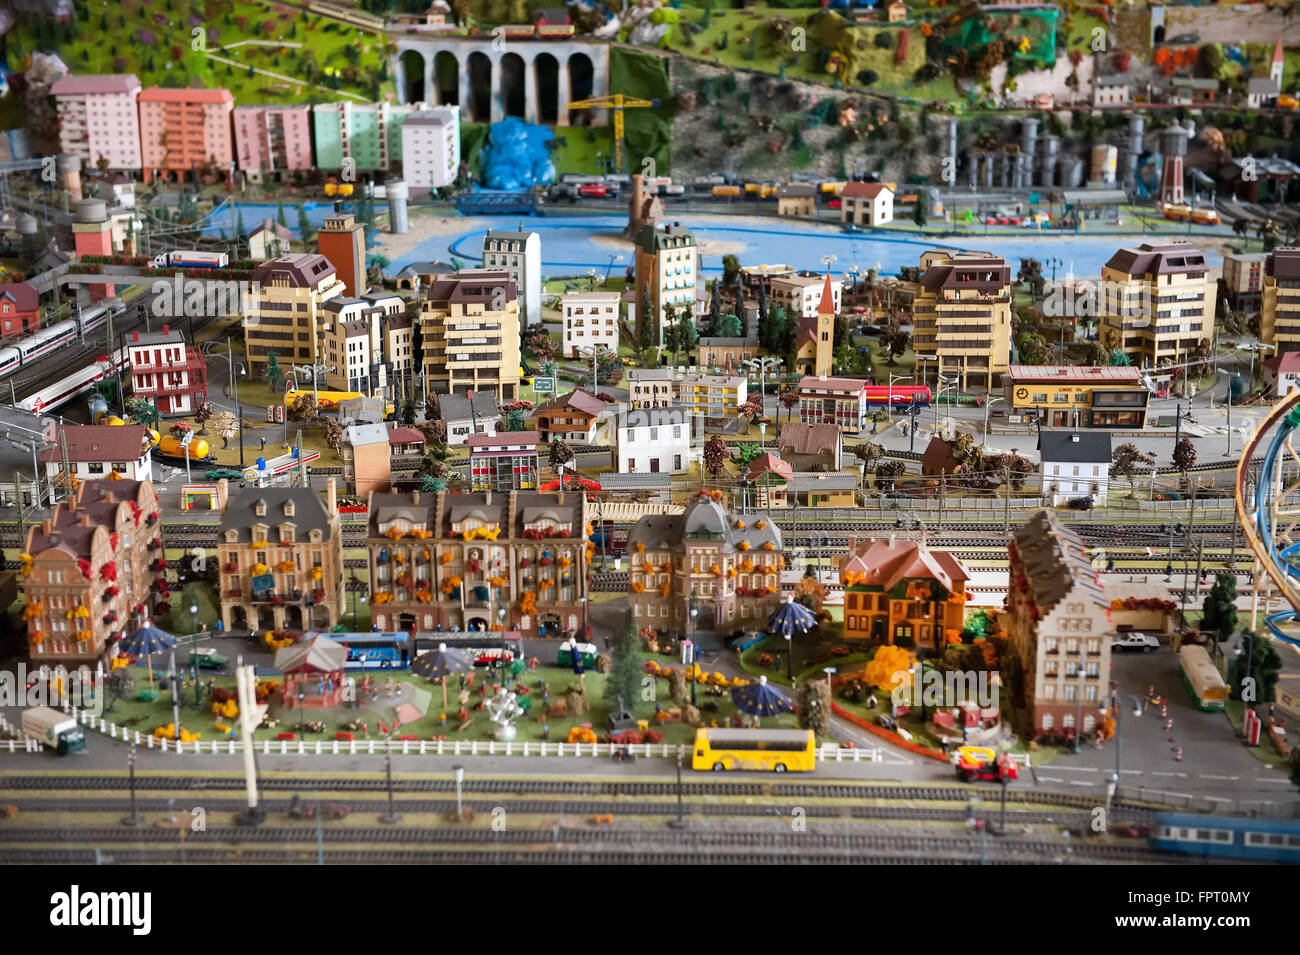 Jouet extravagant electric model railroad avec bâtiment de ville, maisons, paysages et autres figurines Banque D'Images